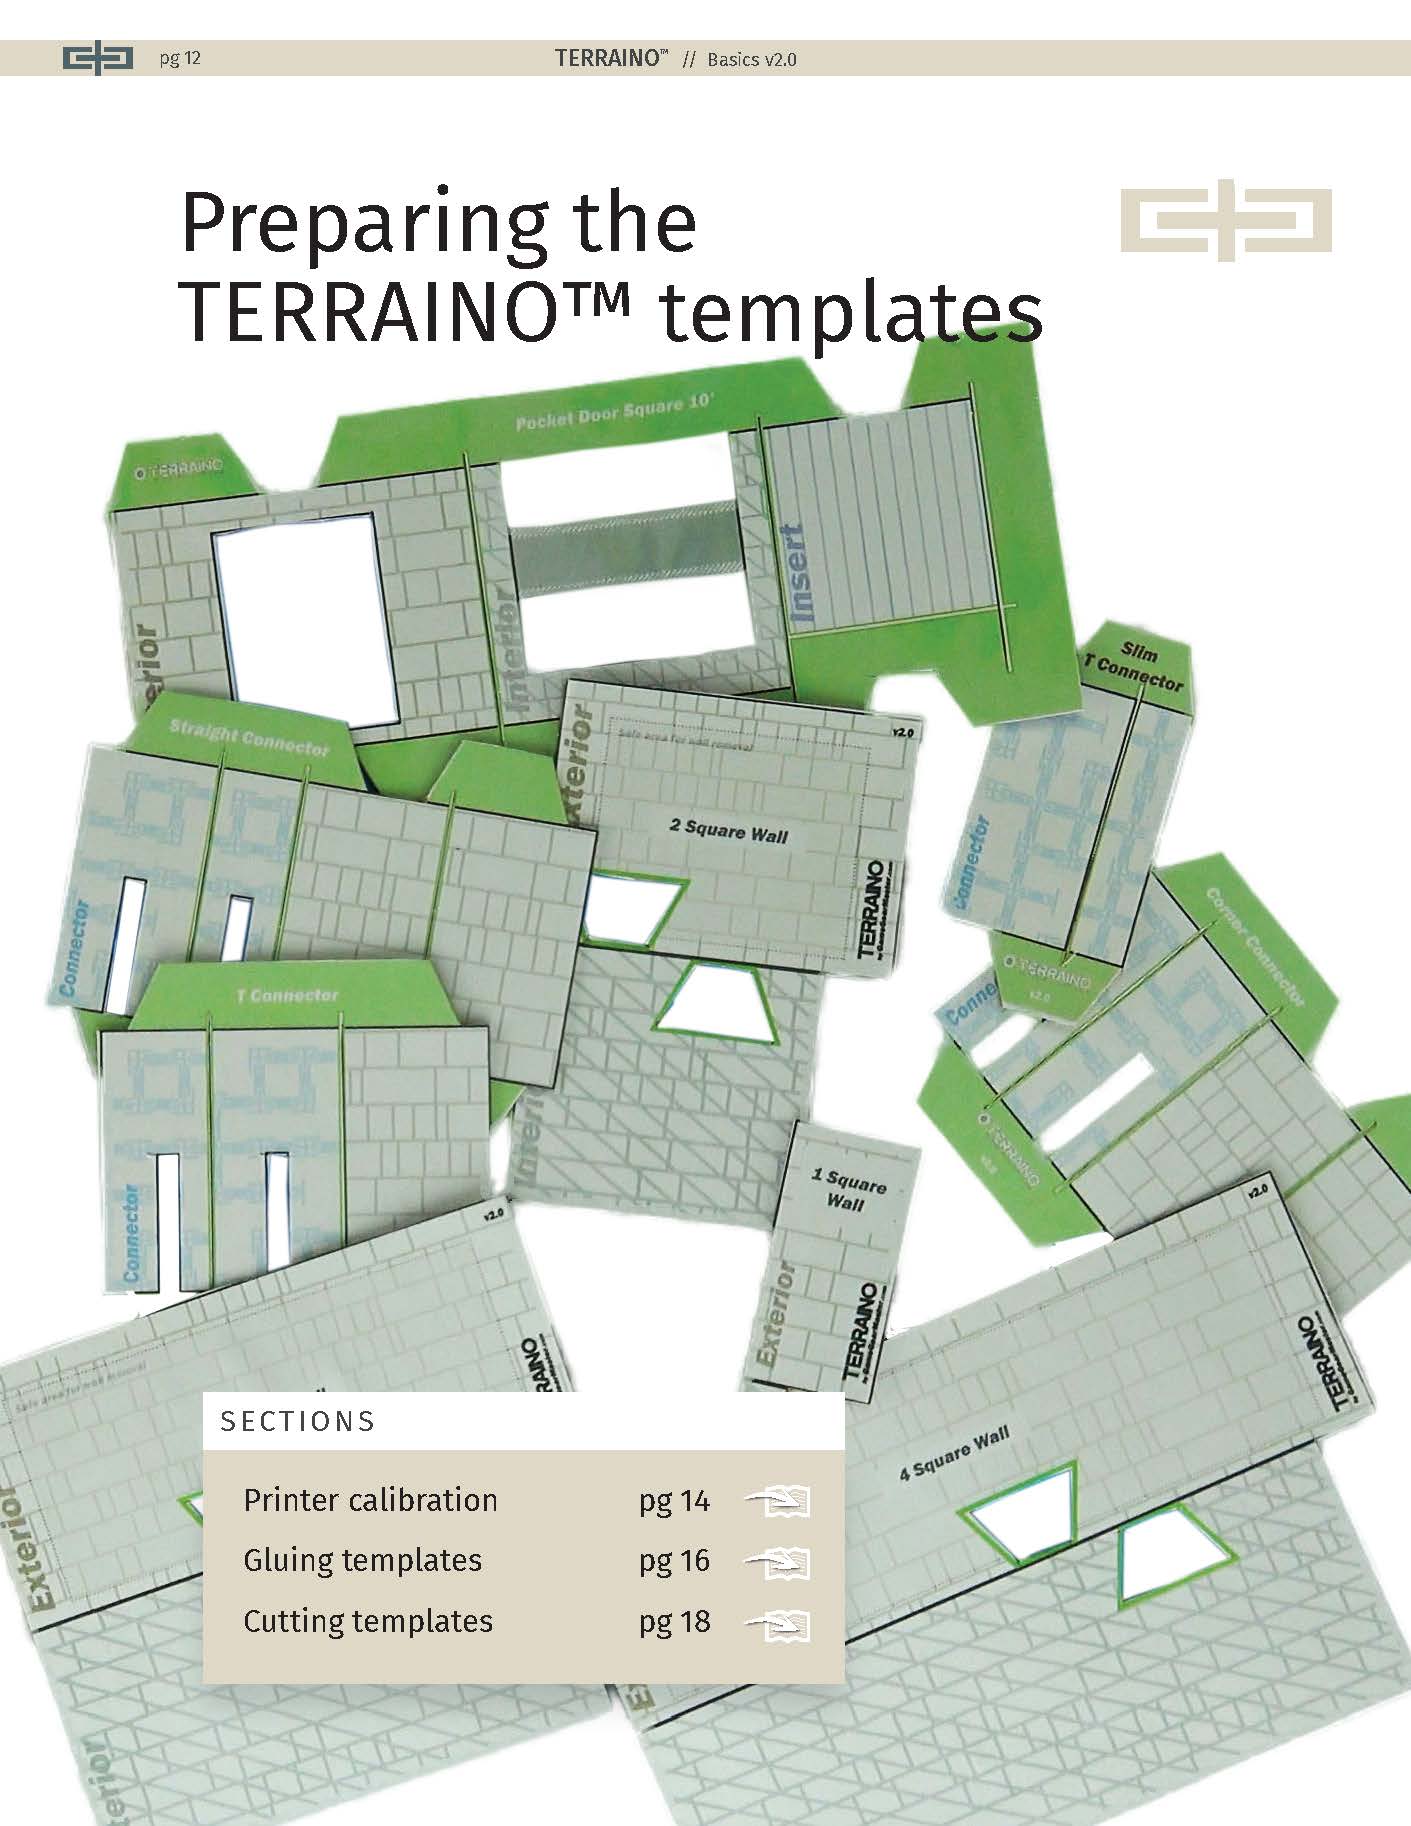 Templates make creating TERRAINO tabletop terrain pieces a snap.